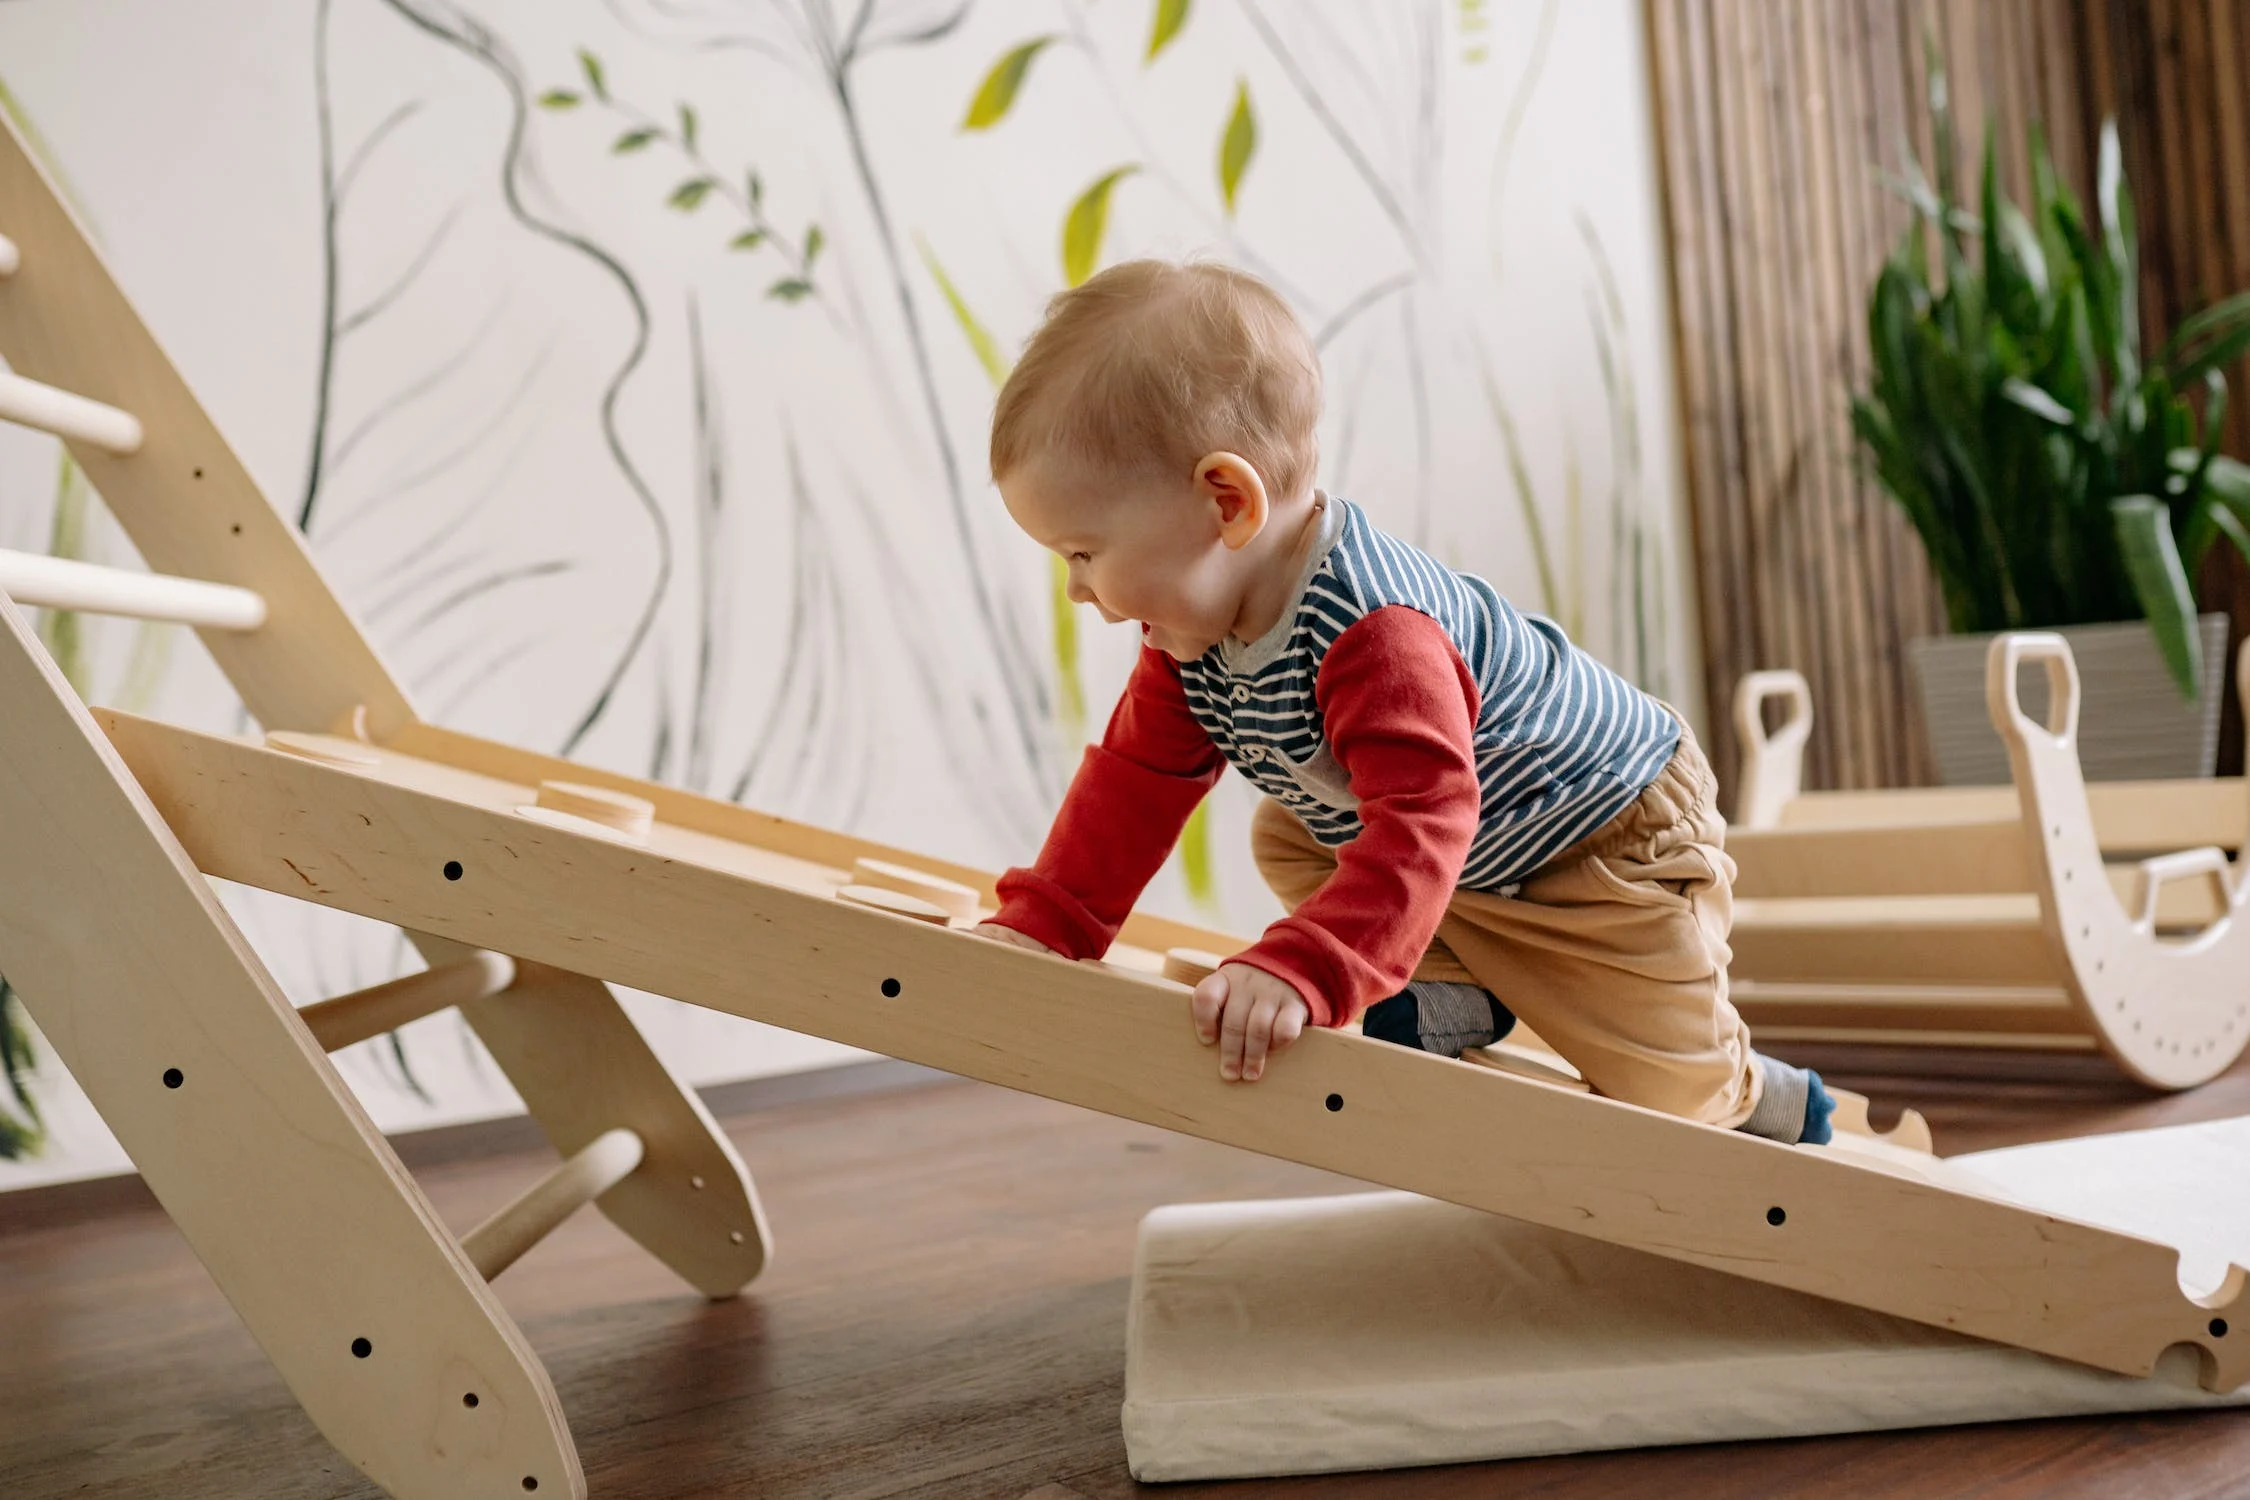 Top 10 Activities to Improve Your Toddler’s Development